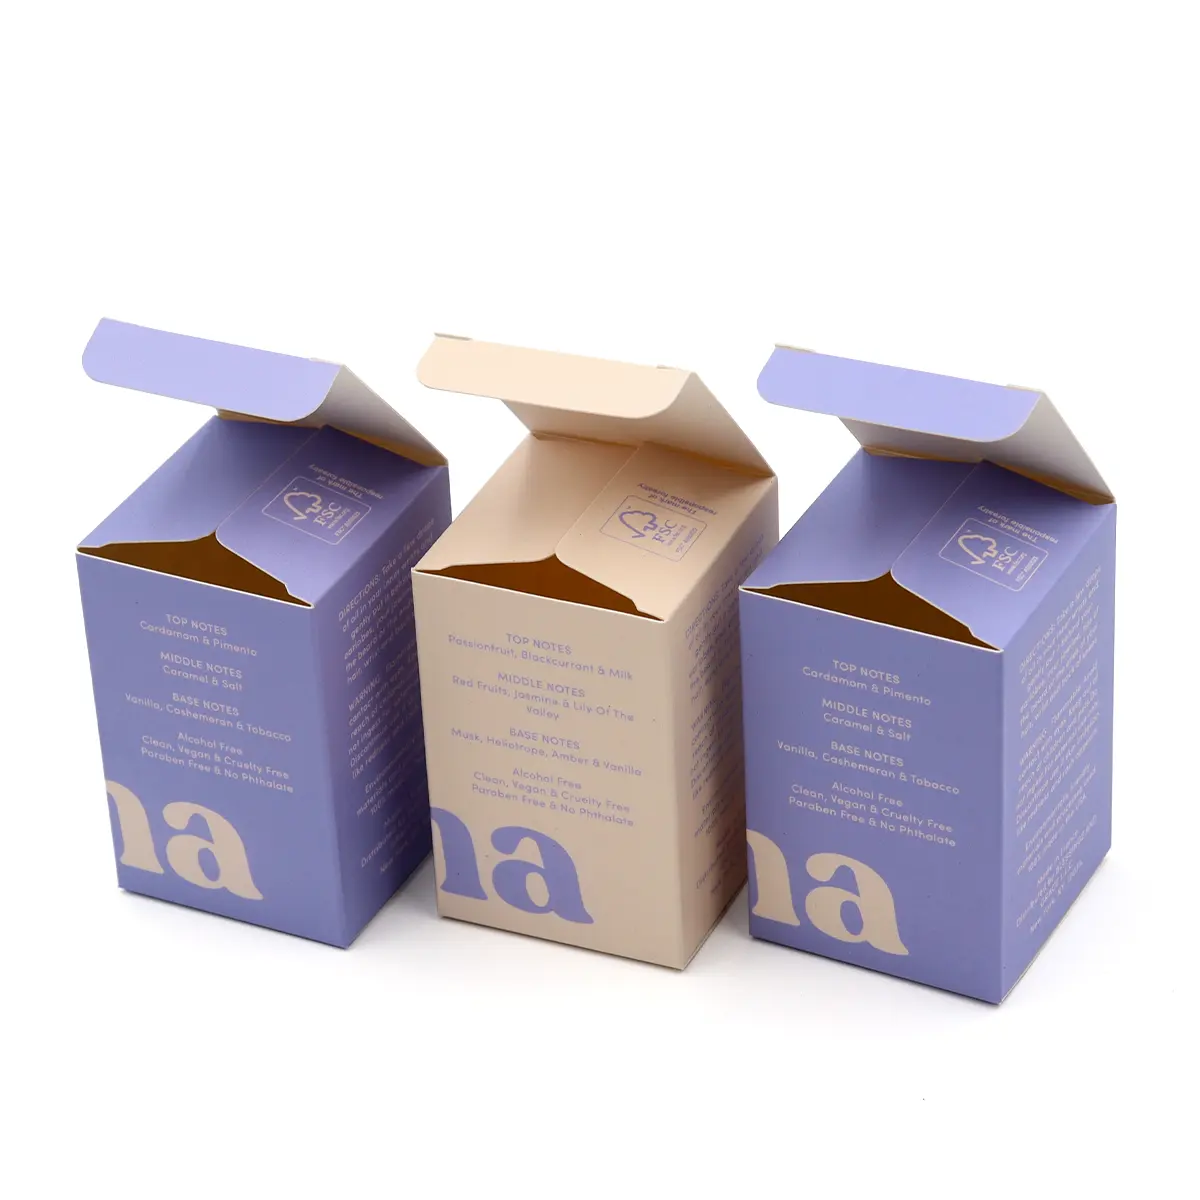 Serum cilt bakımı uçucu yağ için kişiselleştirilmiş özel güzellik ürünleri paketi losyon kağit kutu ambalaj kutusu